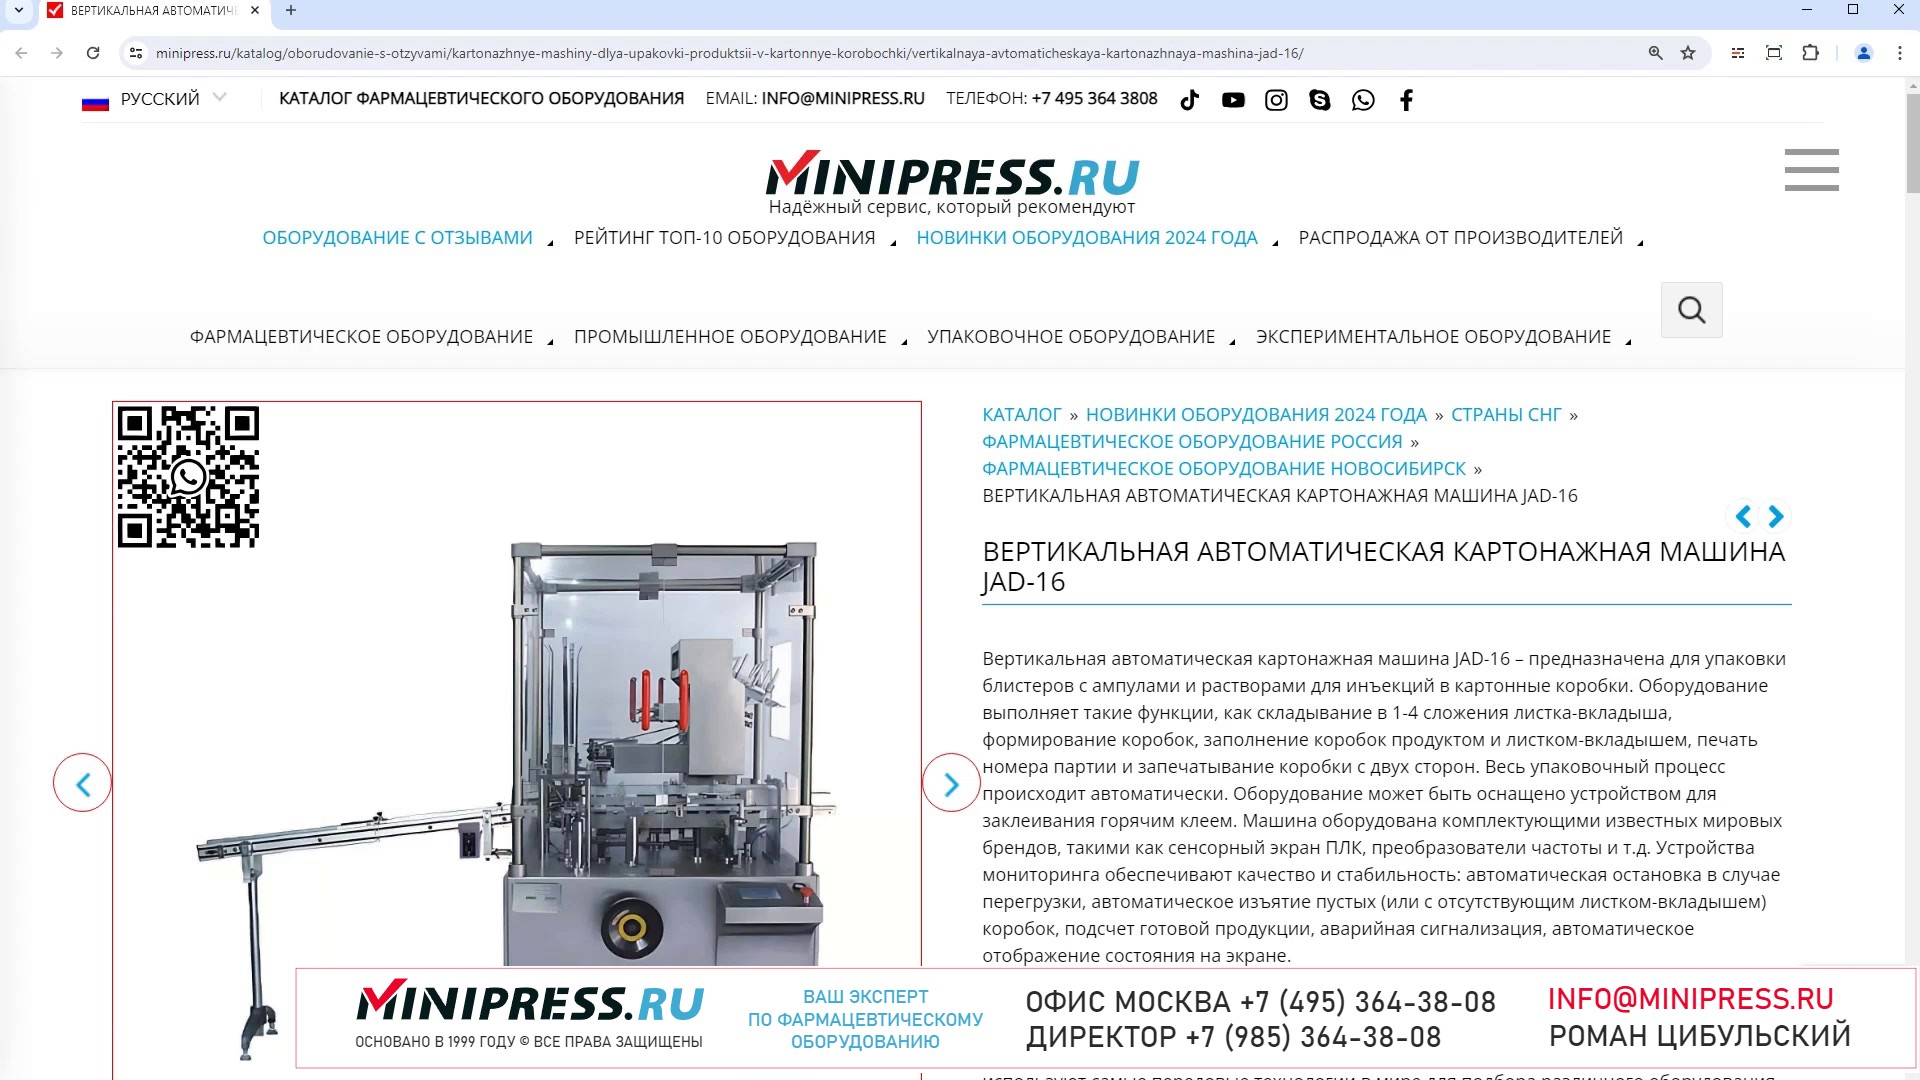 Minipress.ru Вертикальная автоматическая картонажная машина JAD-16